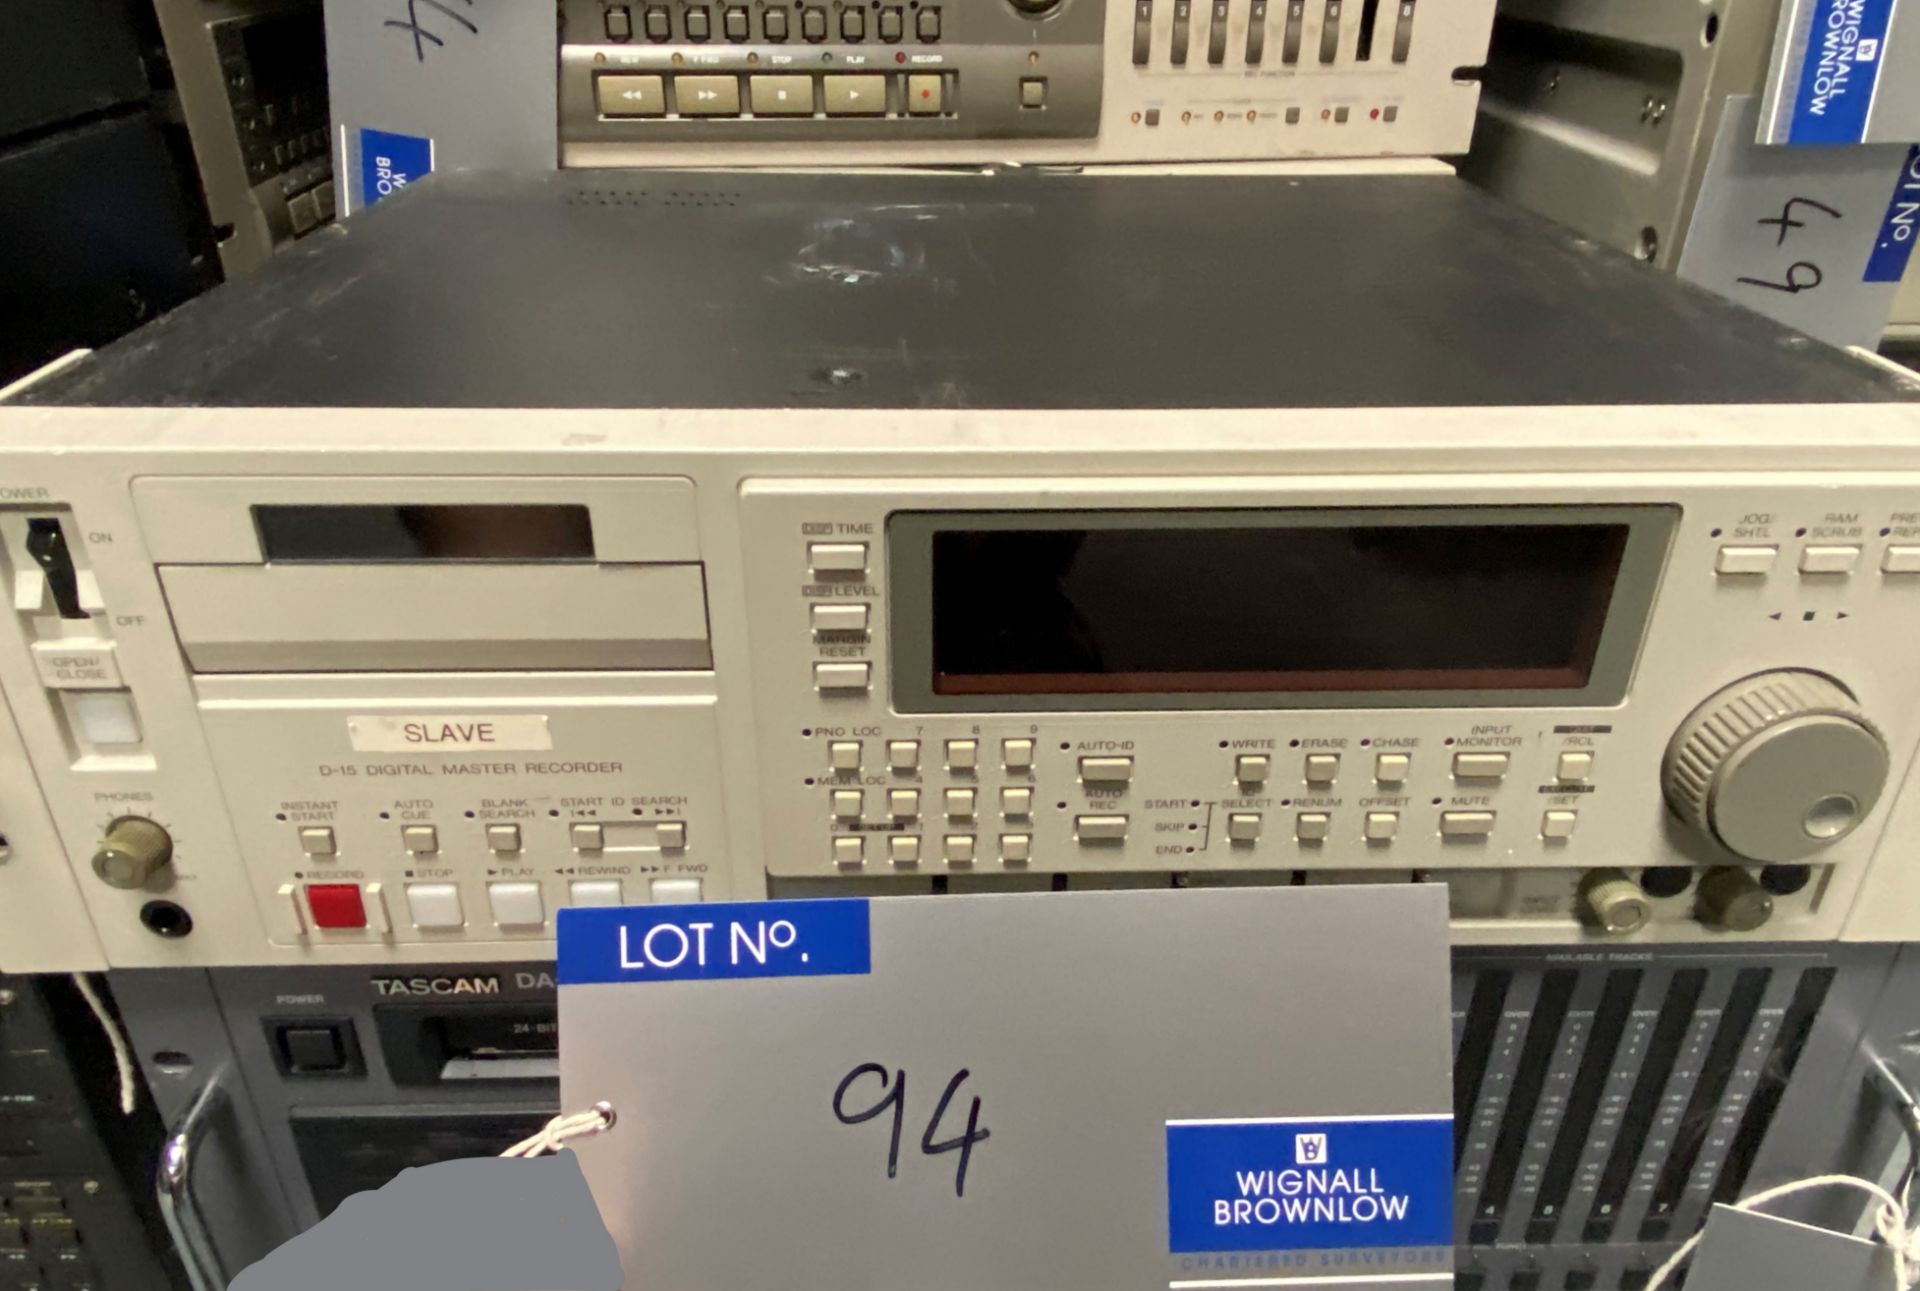 A Fostex D-15 Digital Master Recorder (tape plays).